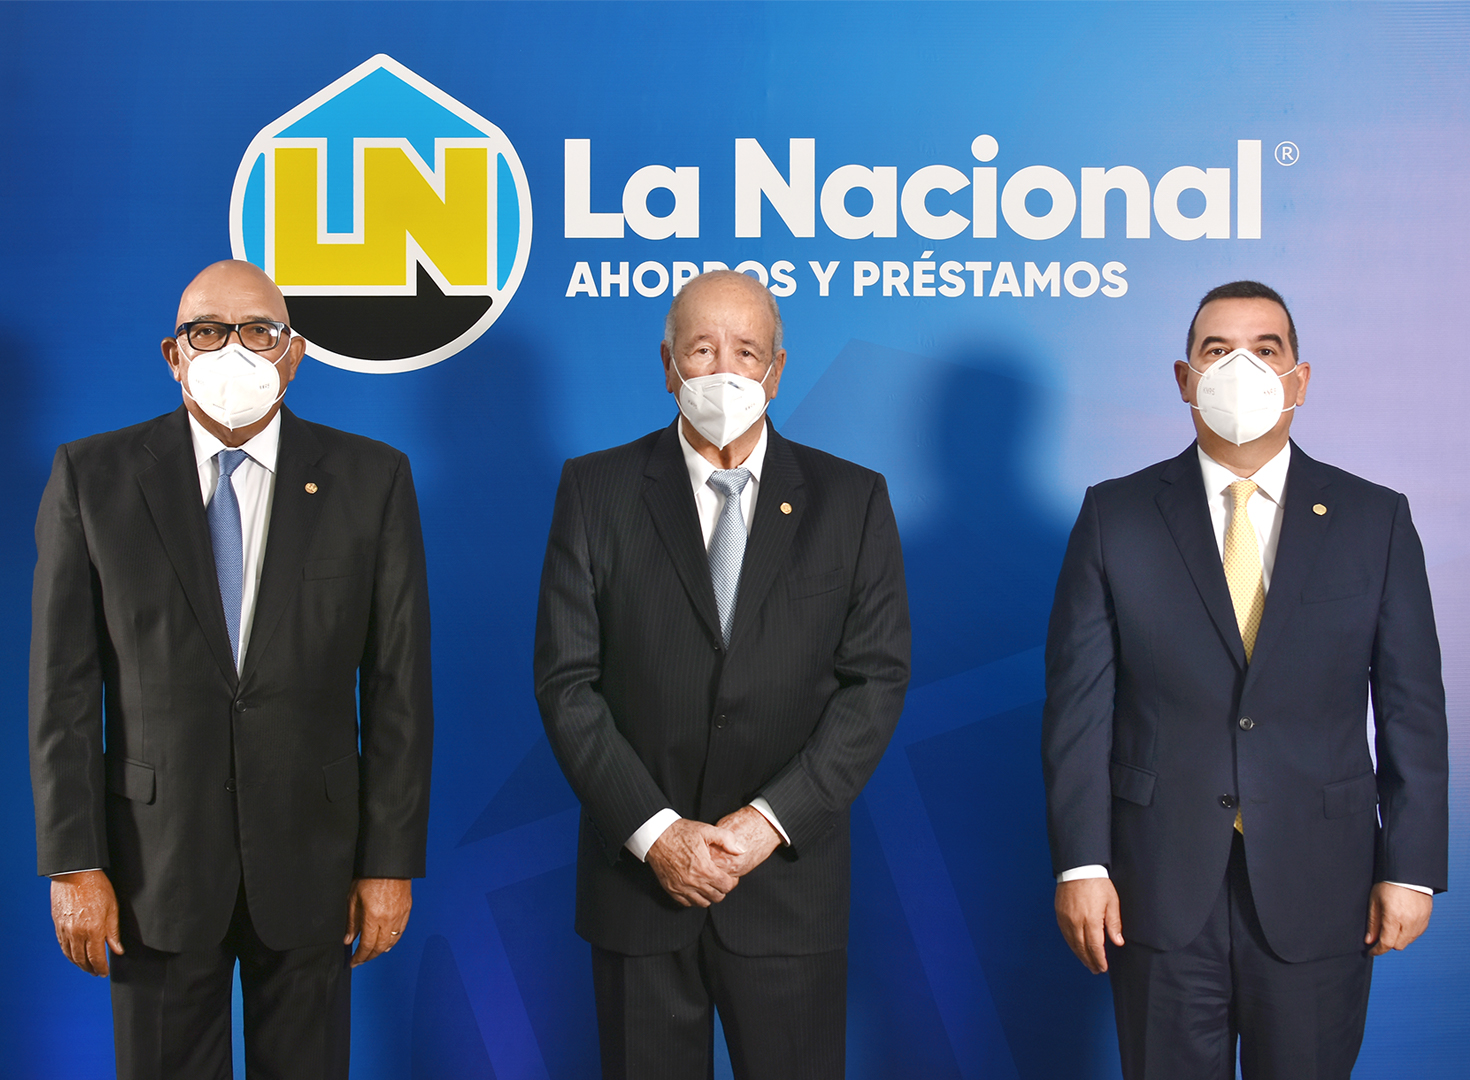 Francisco Melo Chalas sucede al Dr. Freddy A. Reyes Pérez al frente de La Nacional y Gustavo Zuluaga Alam asume la vicepresidencia ejecutiva.